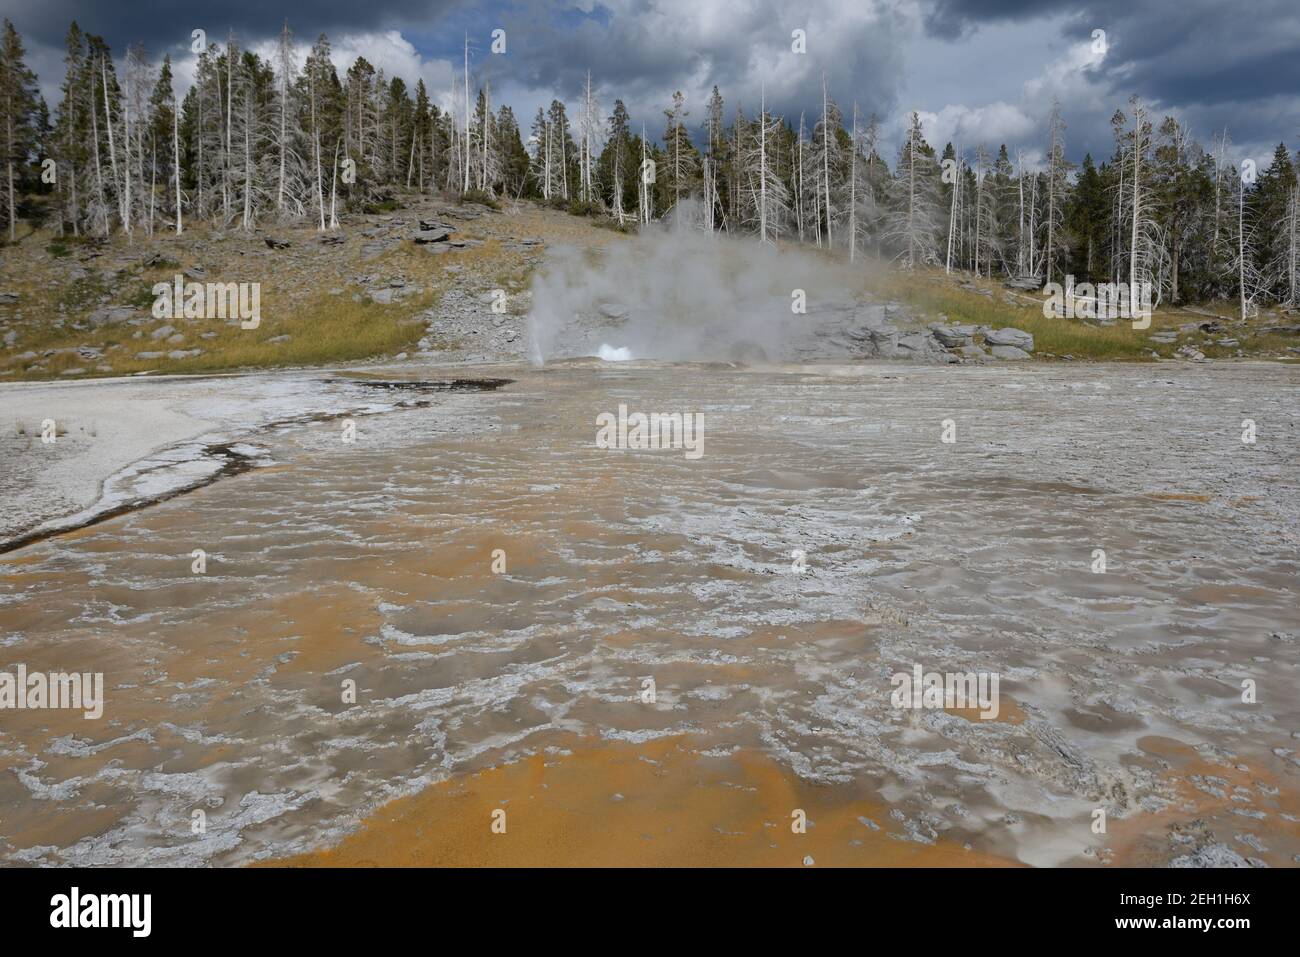 Caractéristiques géothermiques colorées dans la zone géothermique Old Faithful du parc national de Yellowstone, Wyoming, États-Unis Banque D'Images